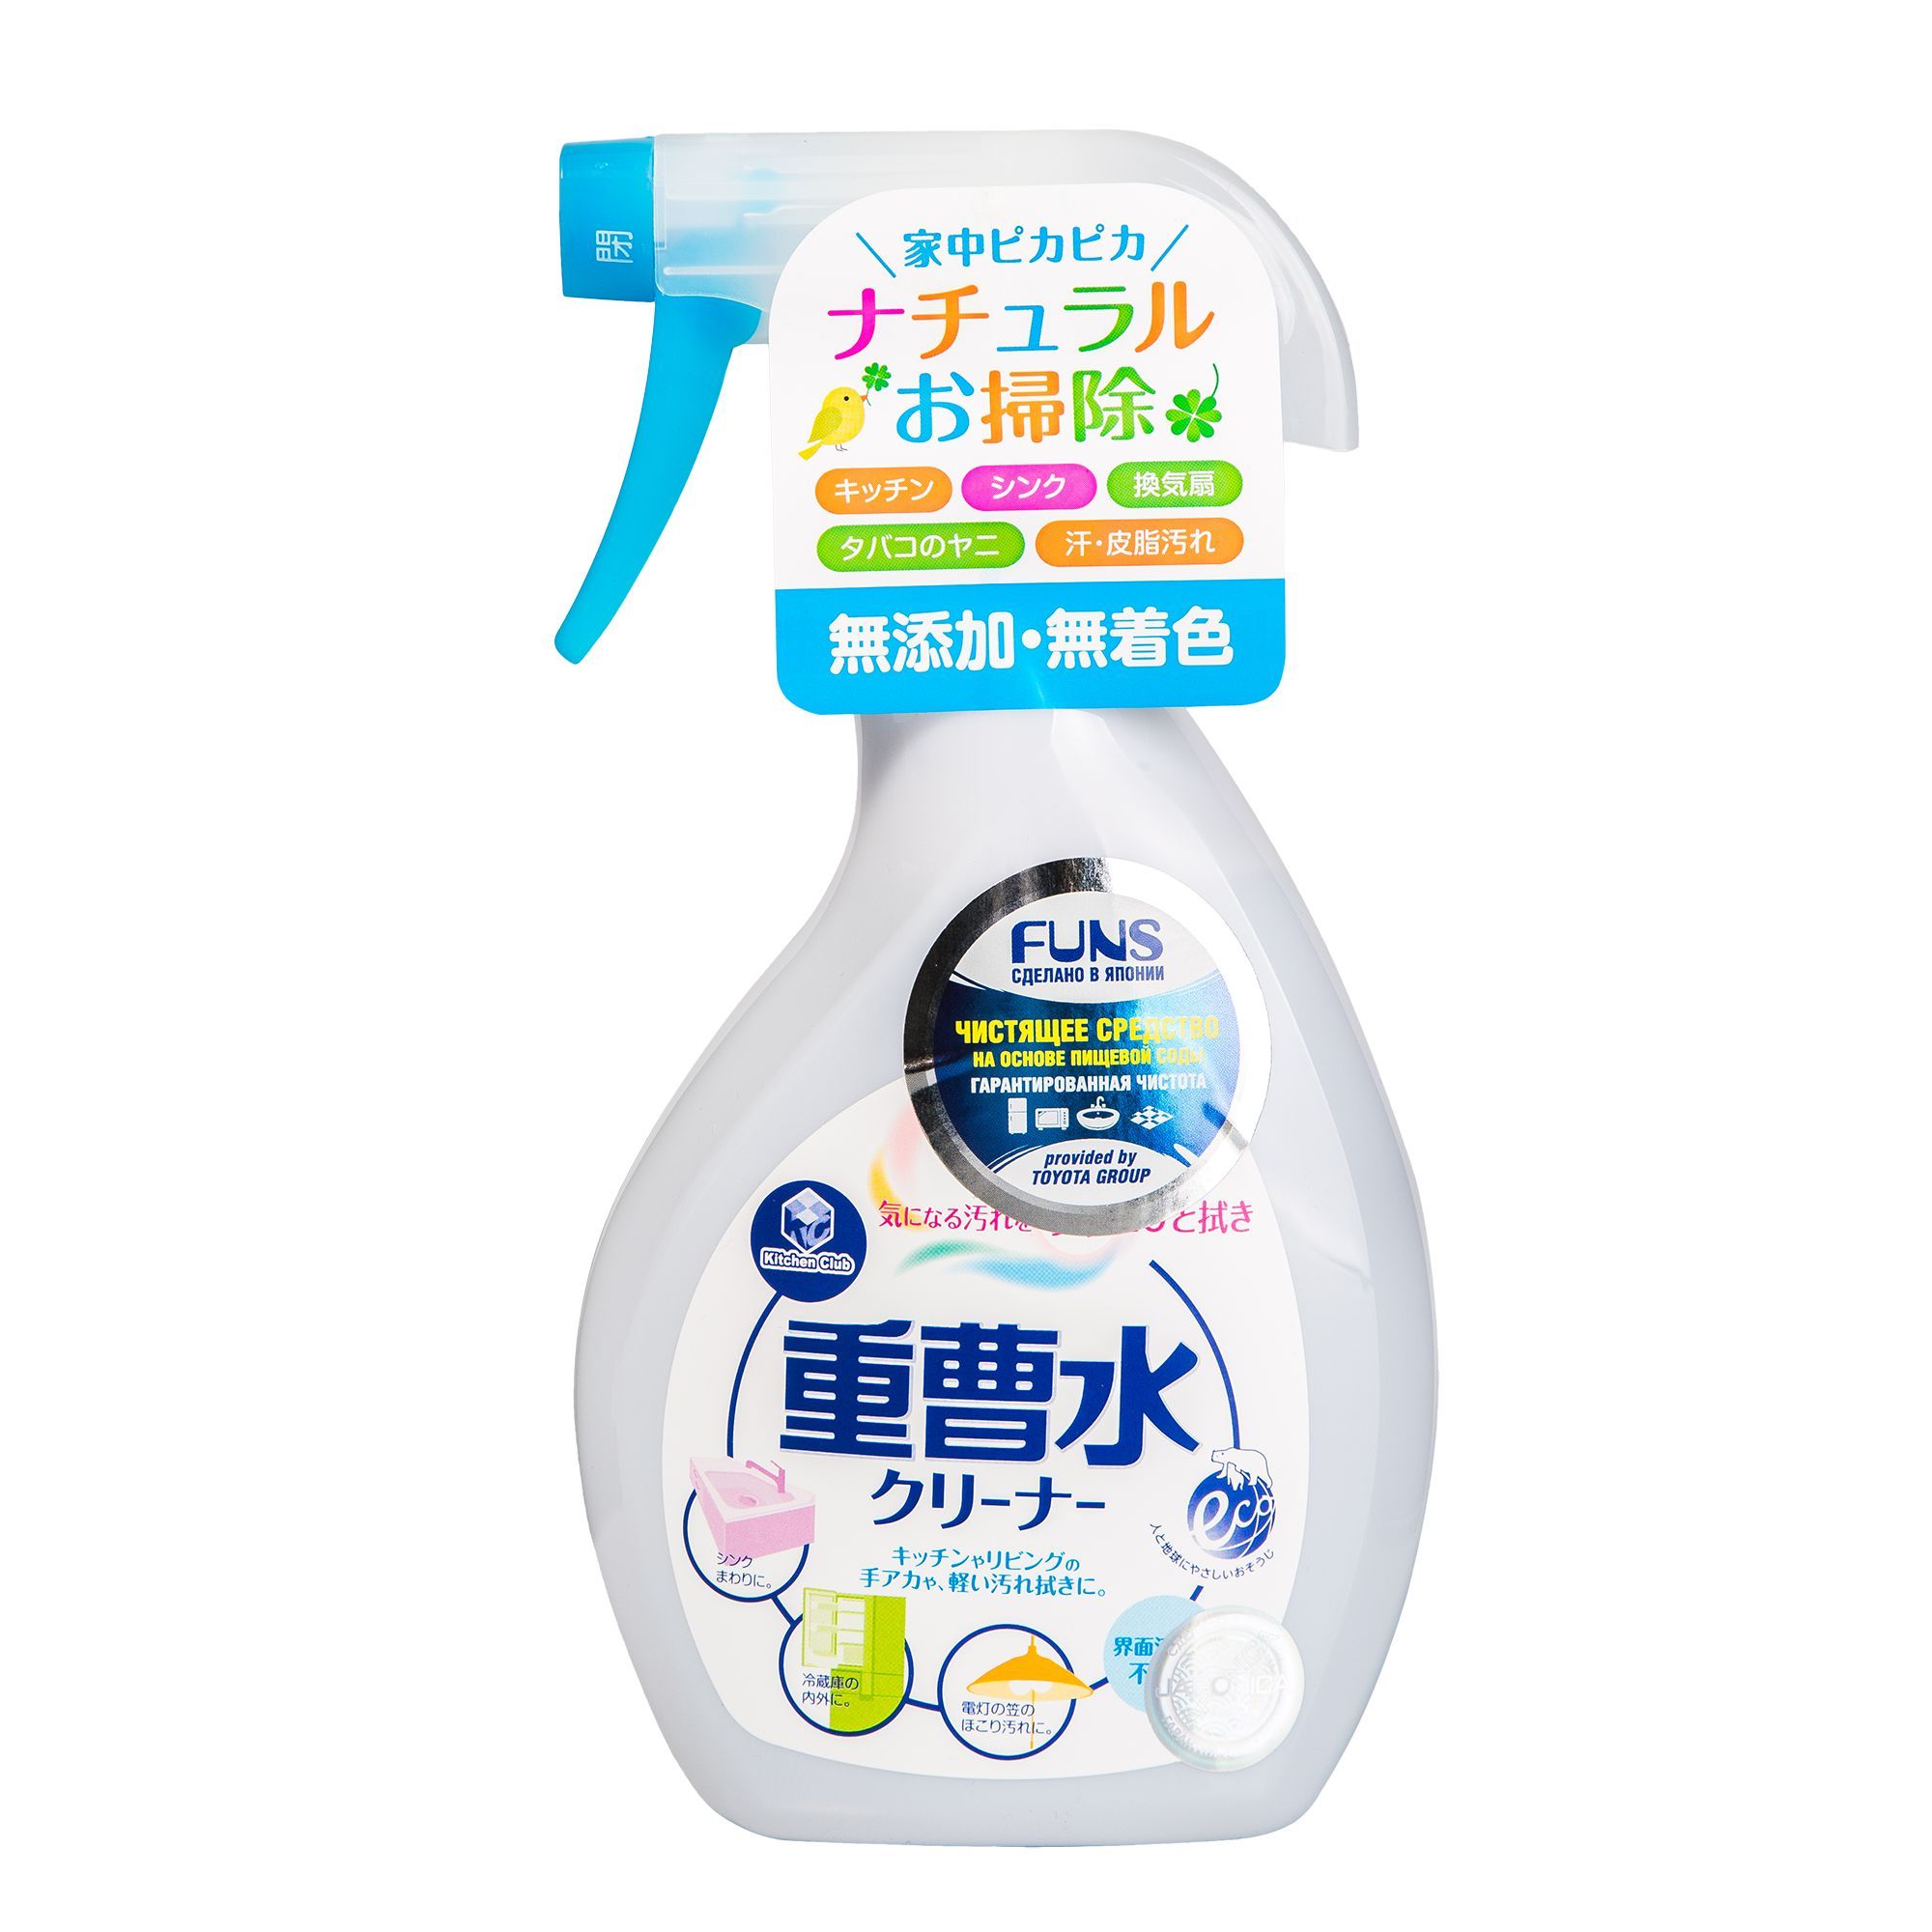 Чистящее средство для мытья посуды. Funs спрей чистящий для дома на основе пищевой соды 400 мл. Японское средство для уборки. Спрей для чистки Япония. Funs спрей чистящий.